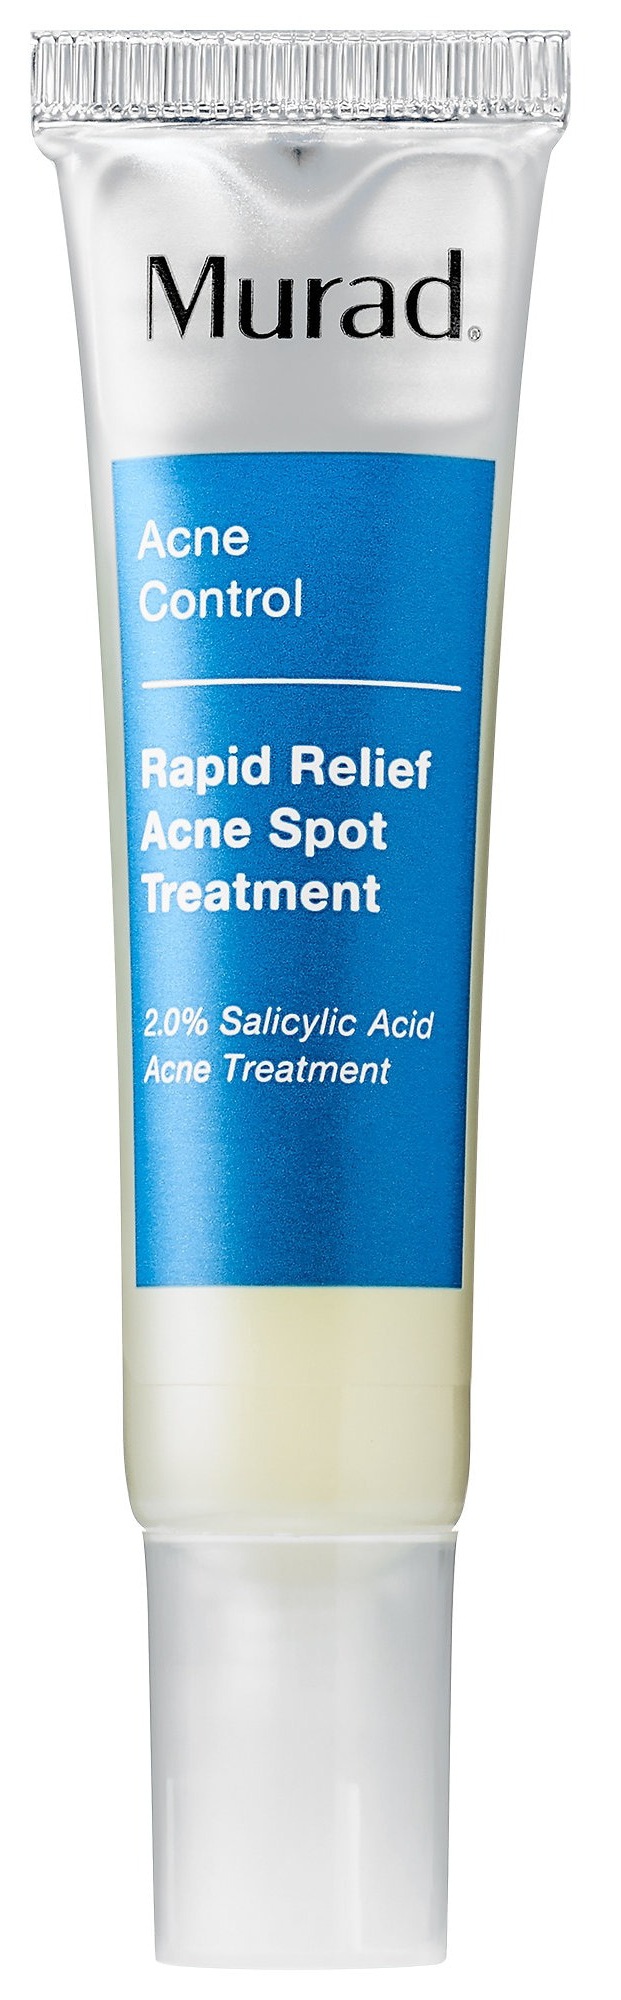 2.0% | Rapid Relief Acne Spot Treatment